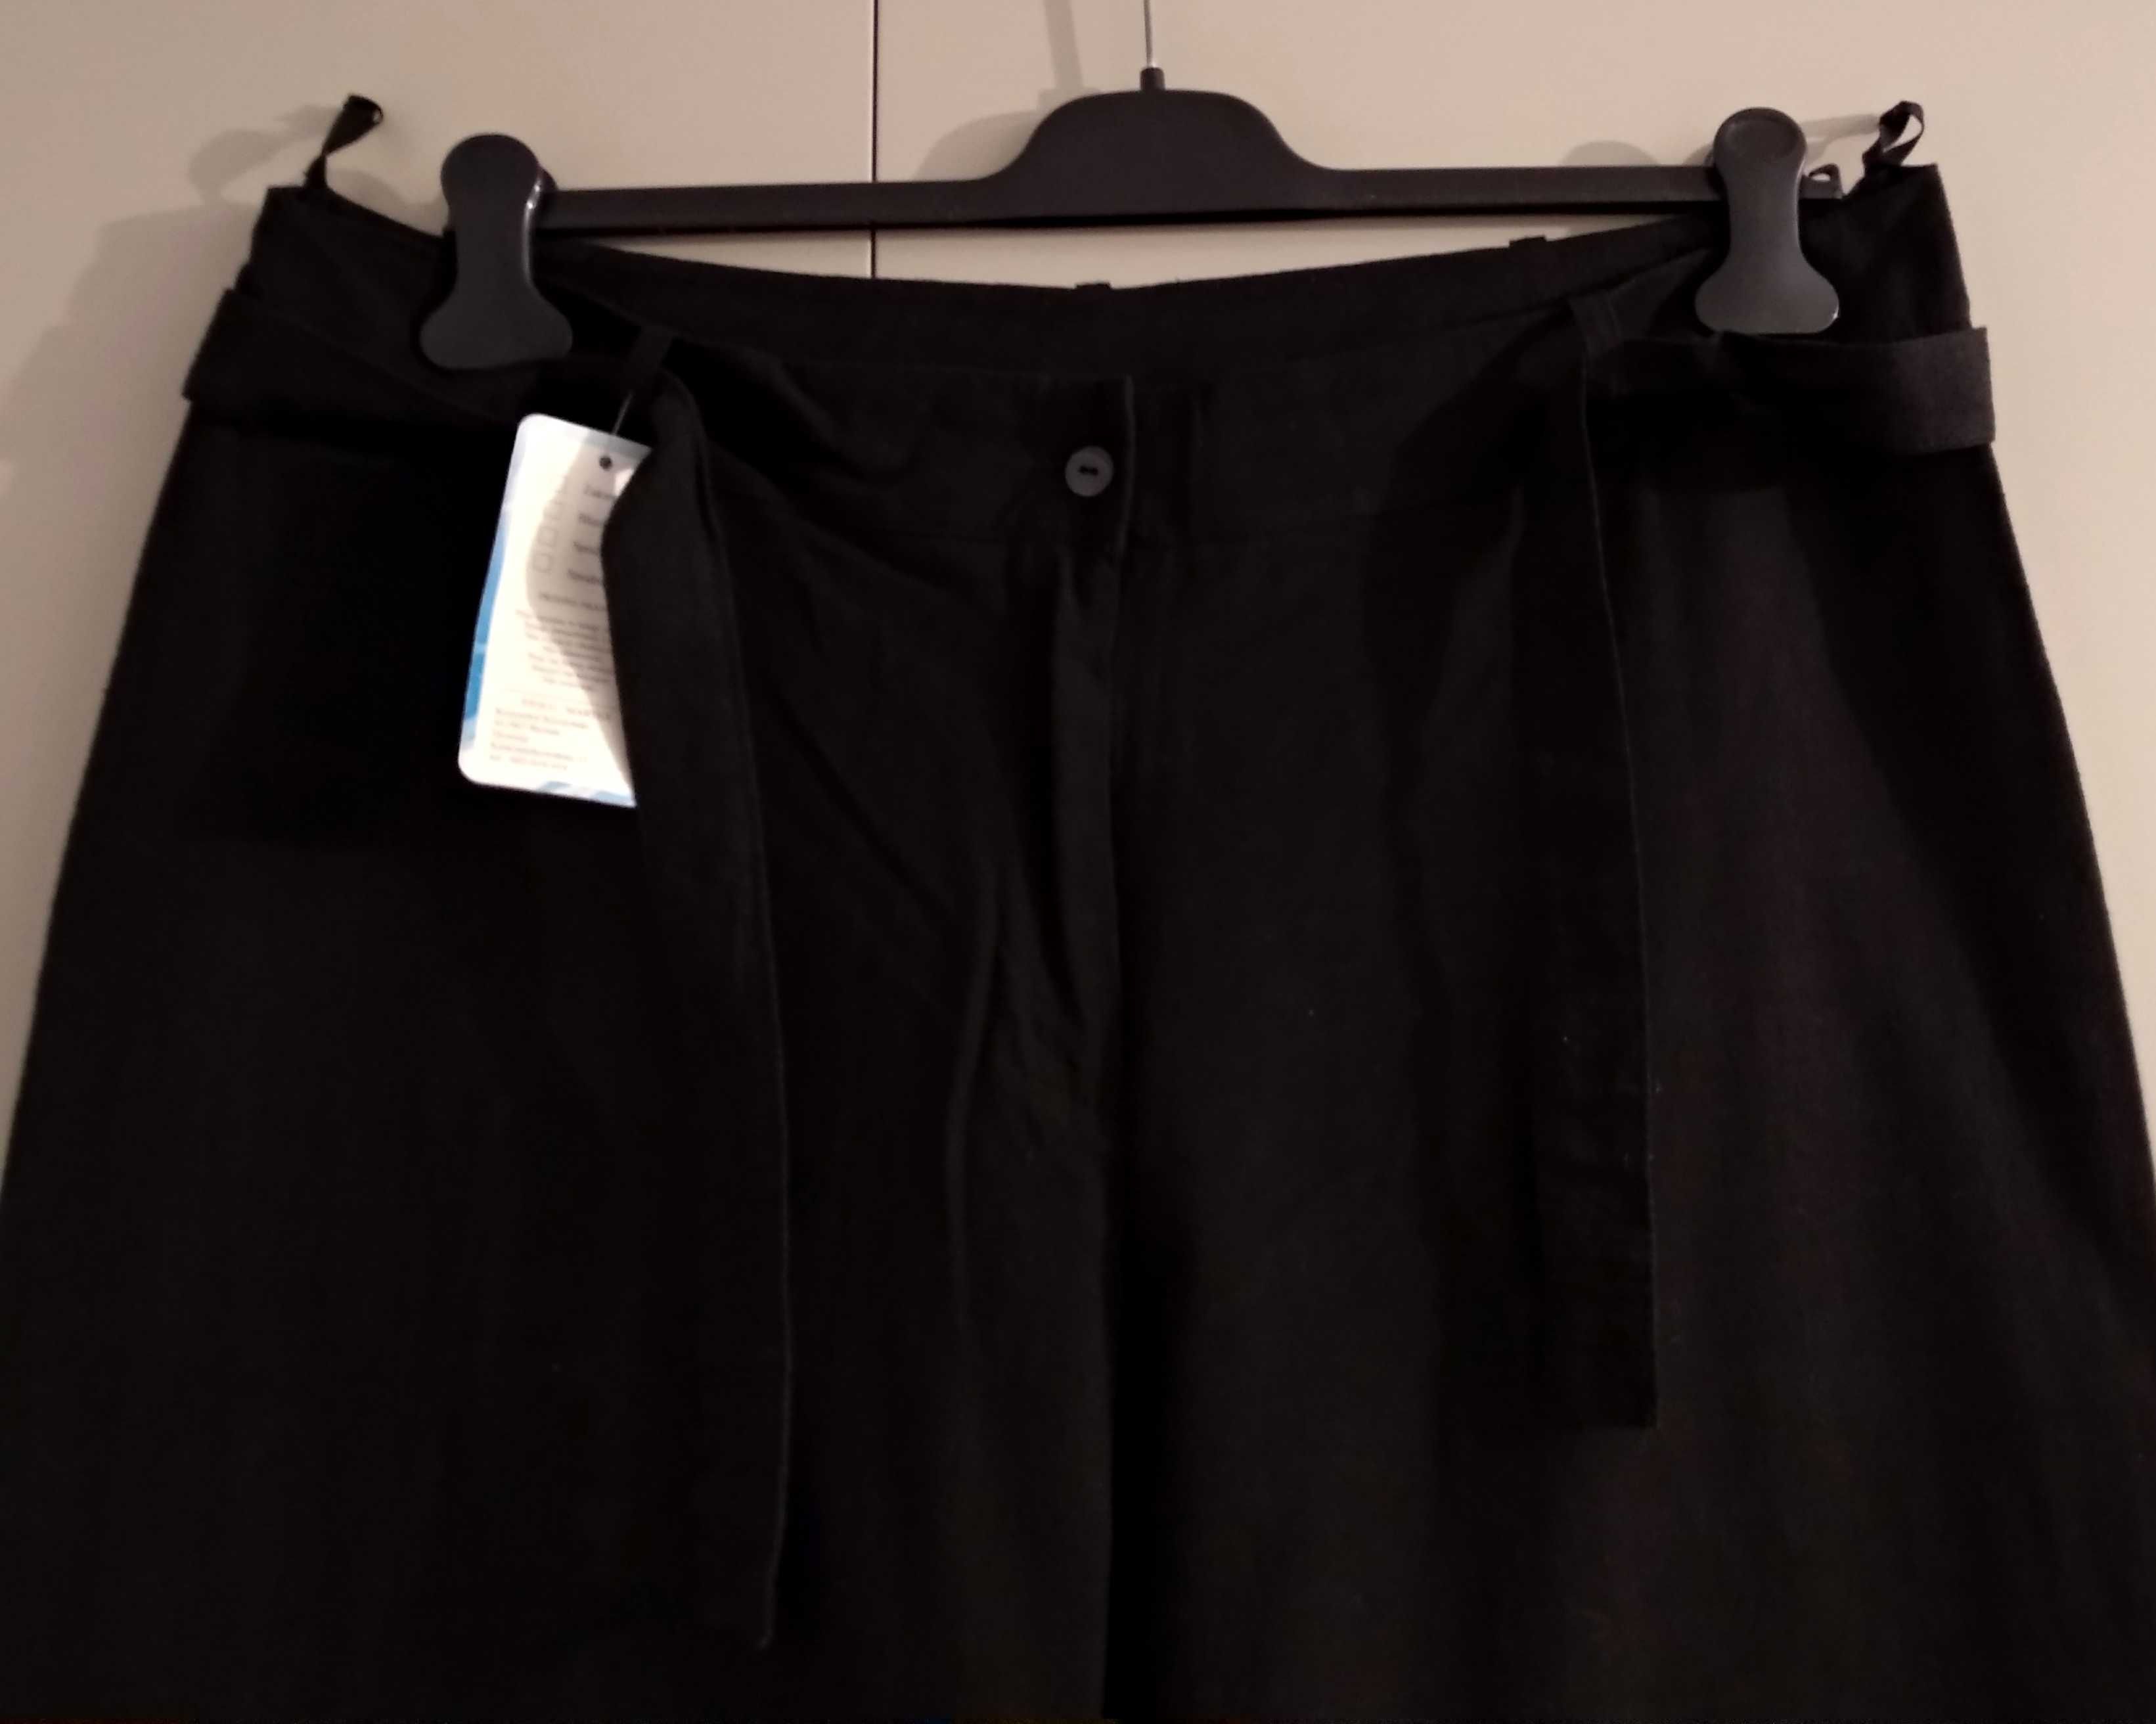 Spodnie materiałowe 100% bawełny, czarne, rozmiar 50, pas 104 cm. NOWE